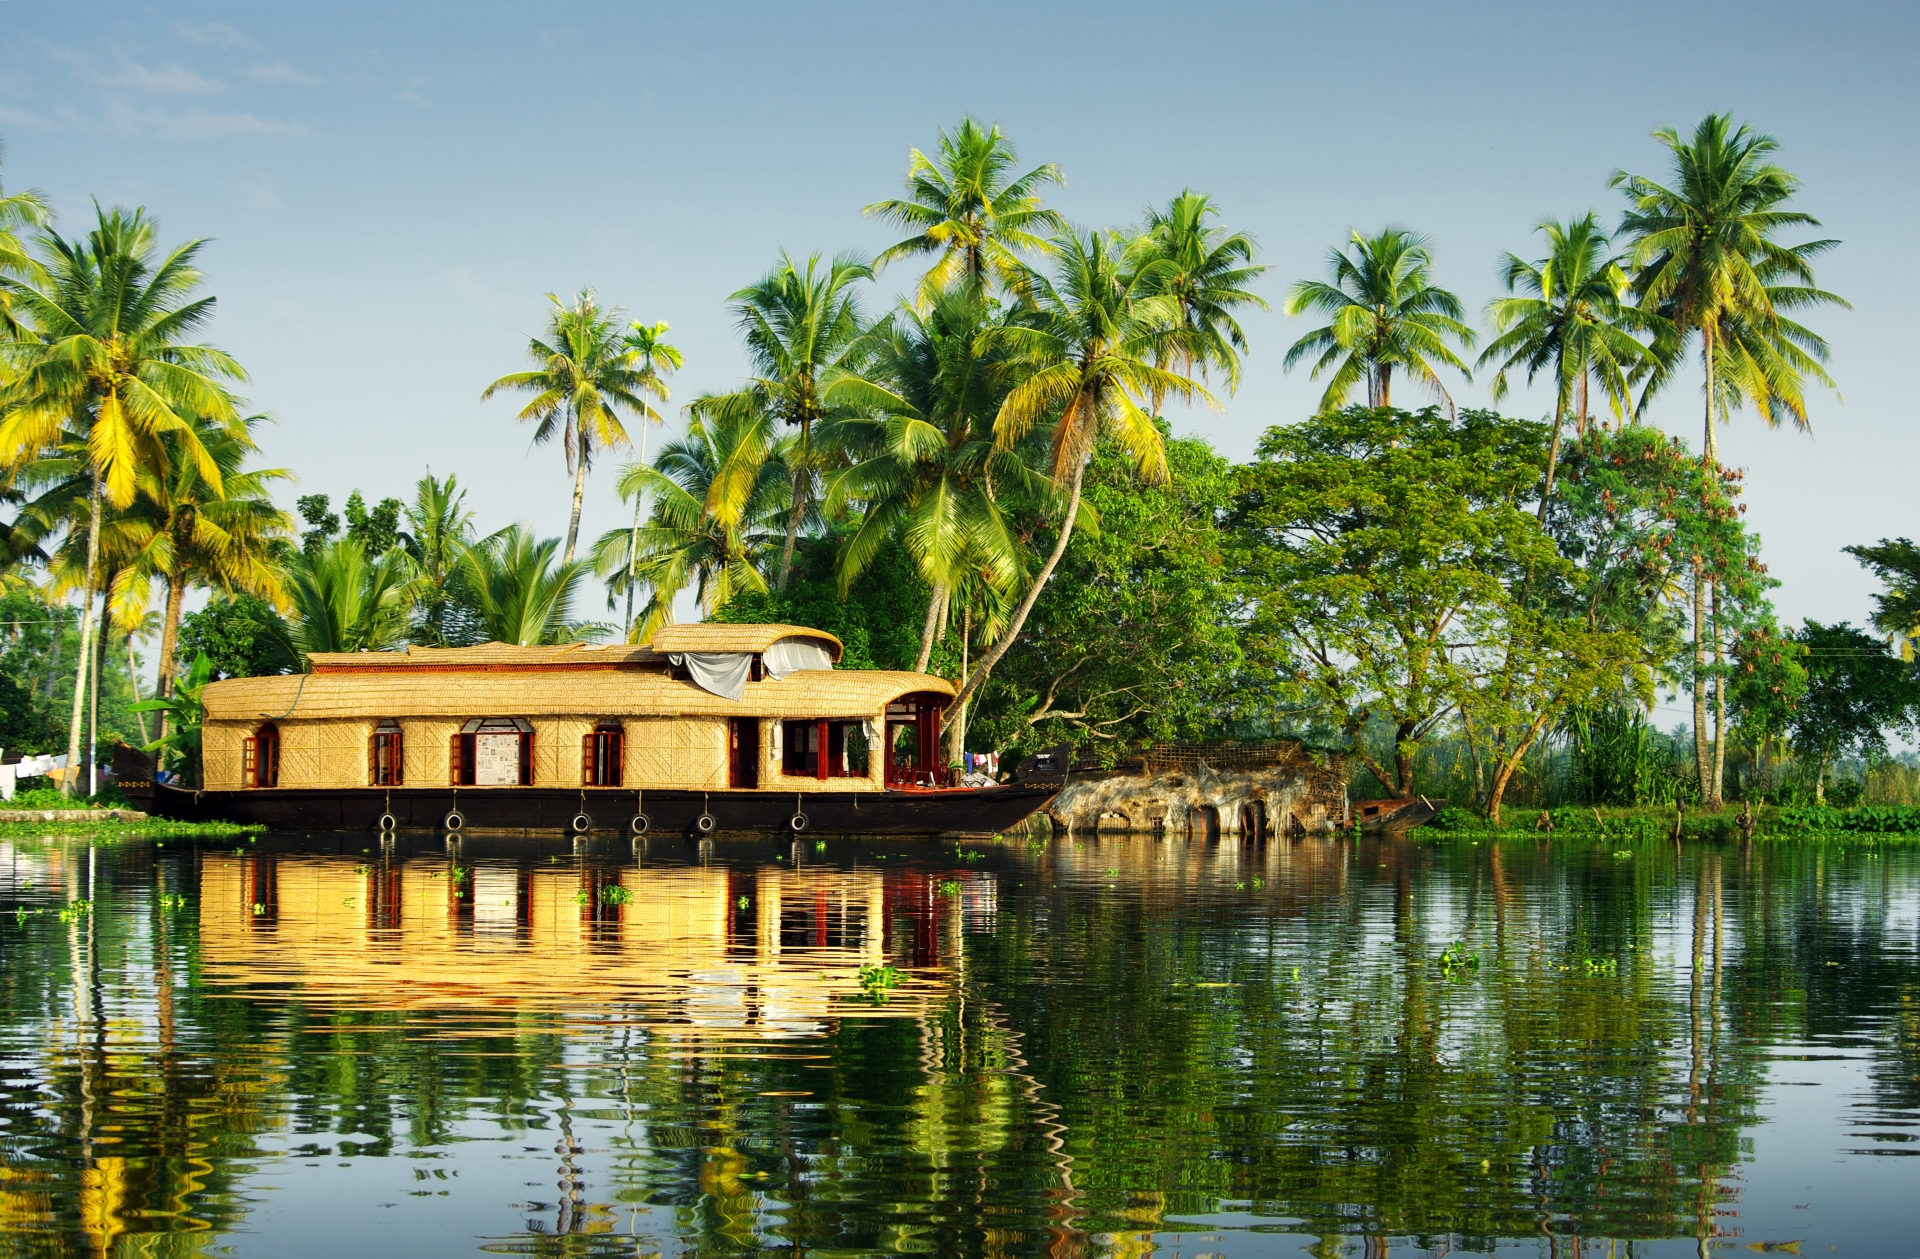 Backwaters - Kerala and the Maldives